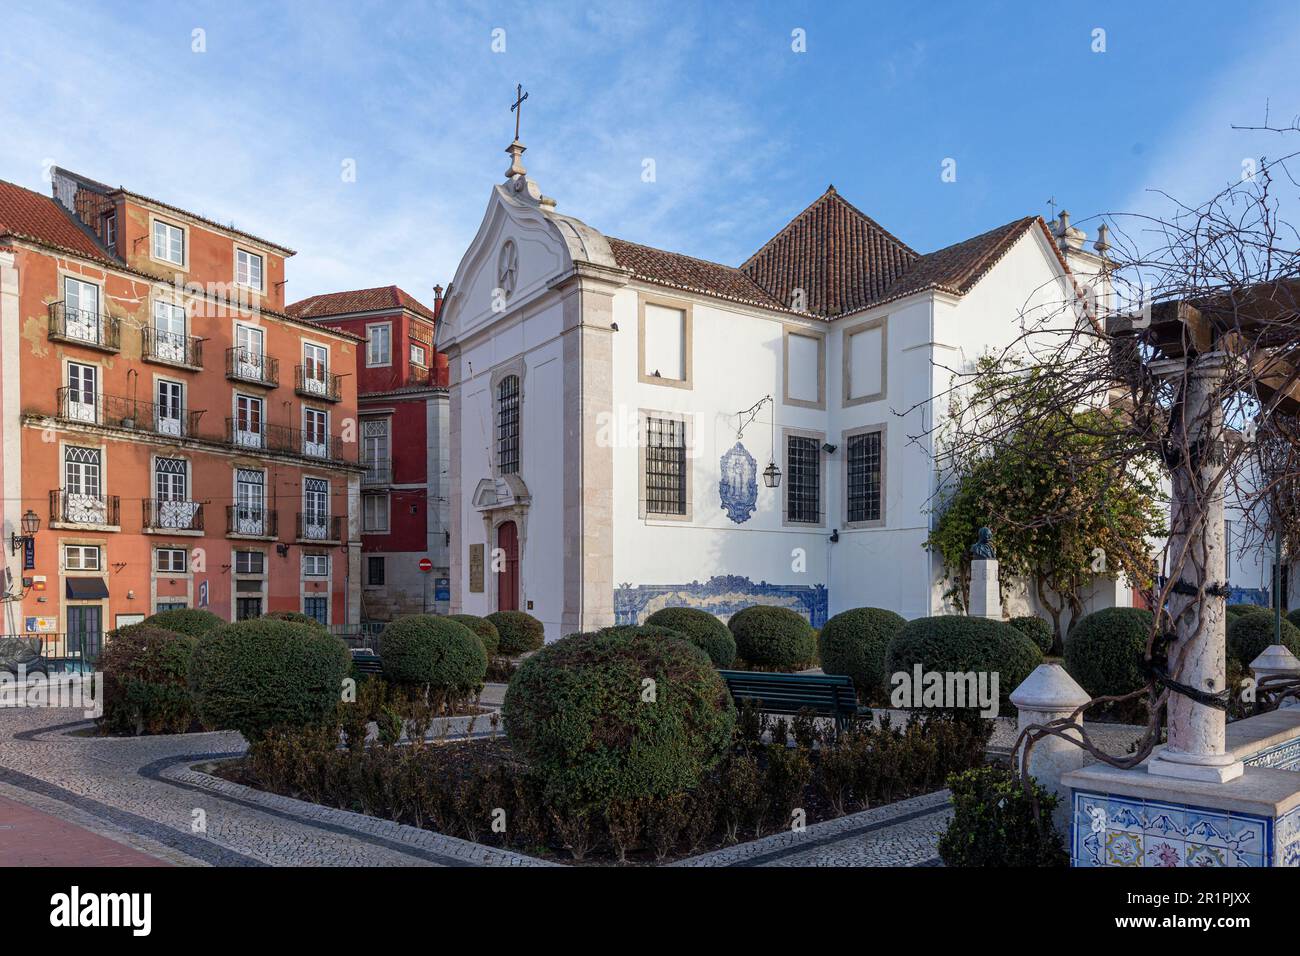 Miradouro de Santa Luzia, une terrasse d'observation avec une pergola offrant une vue spectaculaire sur Lisbonne et le Tage Banque D'Images